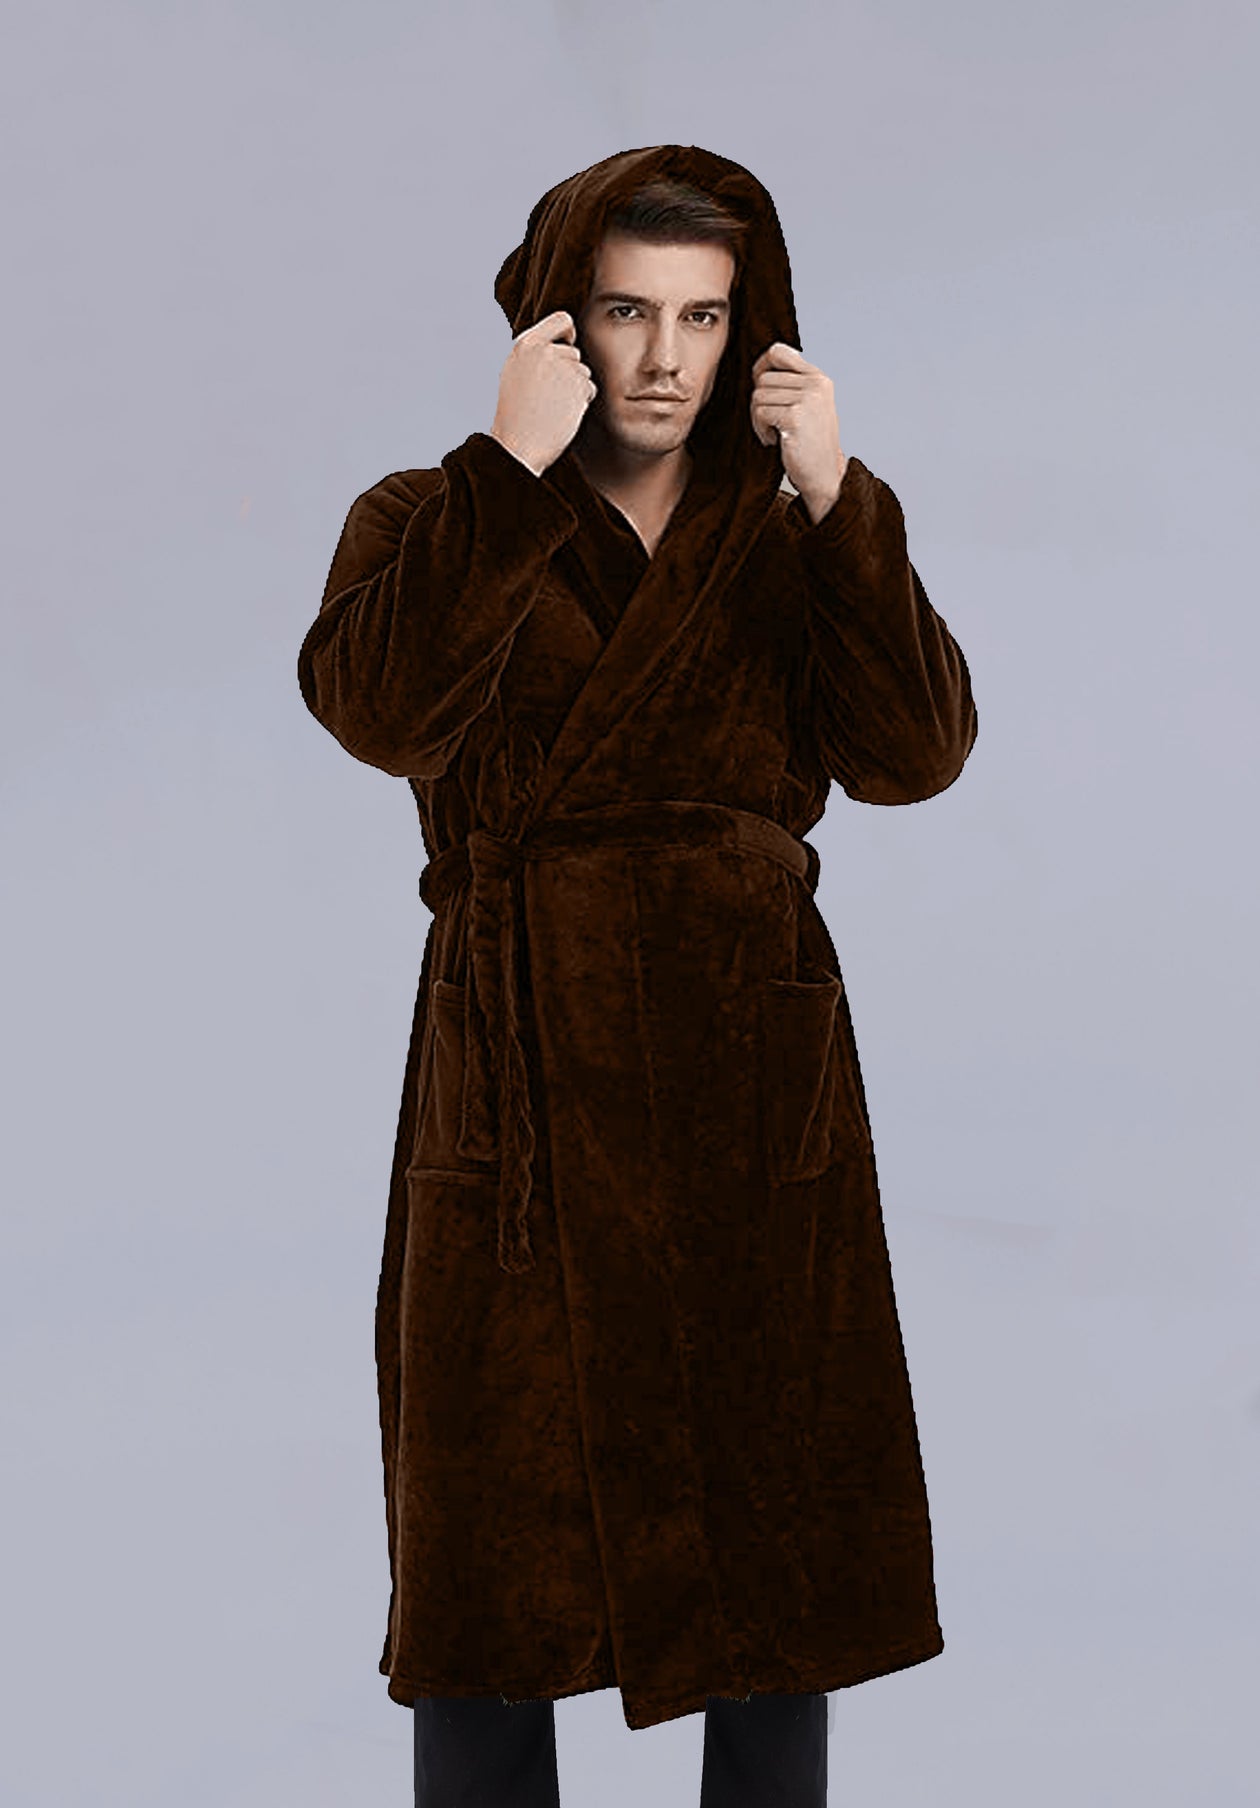 Fur Winter Robes for Men in Nepal – Harrington Nepal